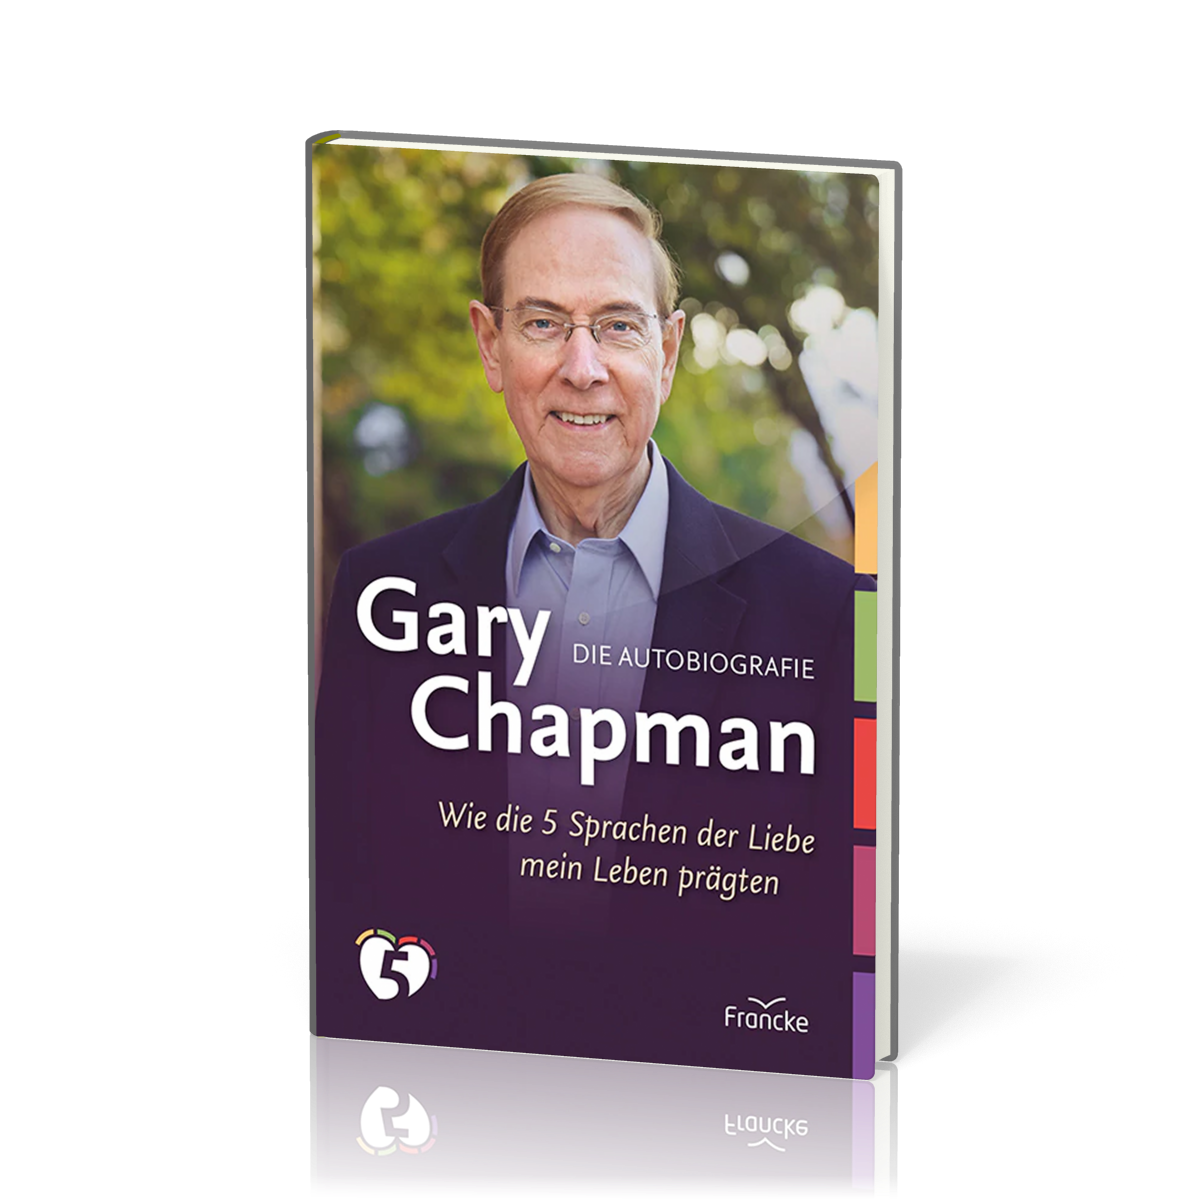 Gary Chapman - Die Autobiografie - Wie die 5 Sprachen der Liebe mein Leben prägten